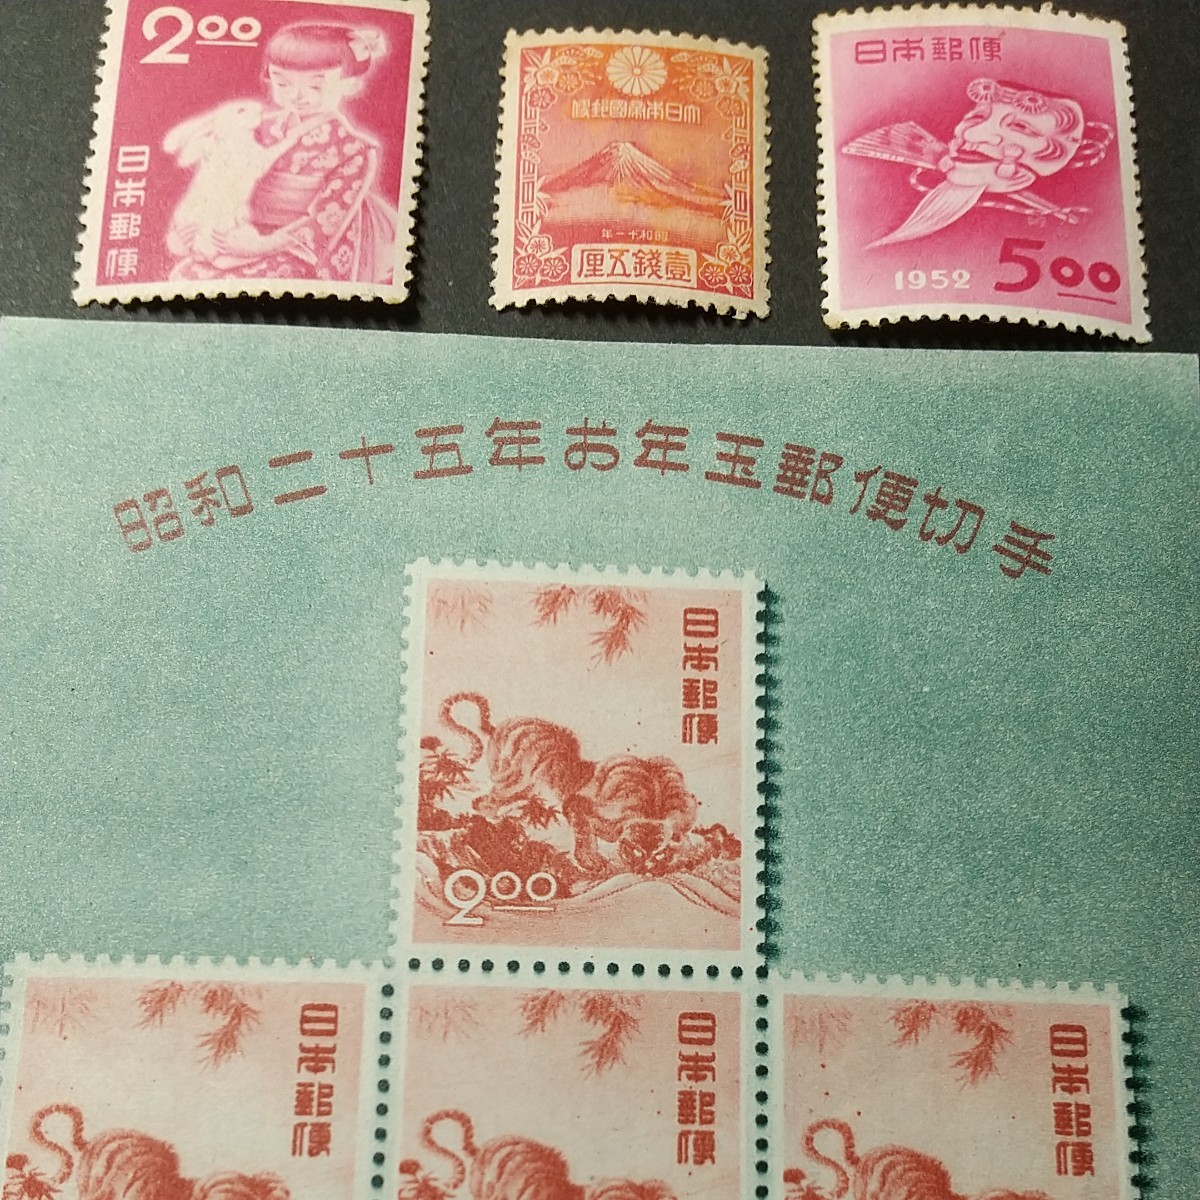 切手コレクション 年賀切手 円山応挙のトラ小型シート、富士、うさぎと少女、おきなの面